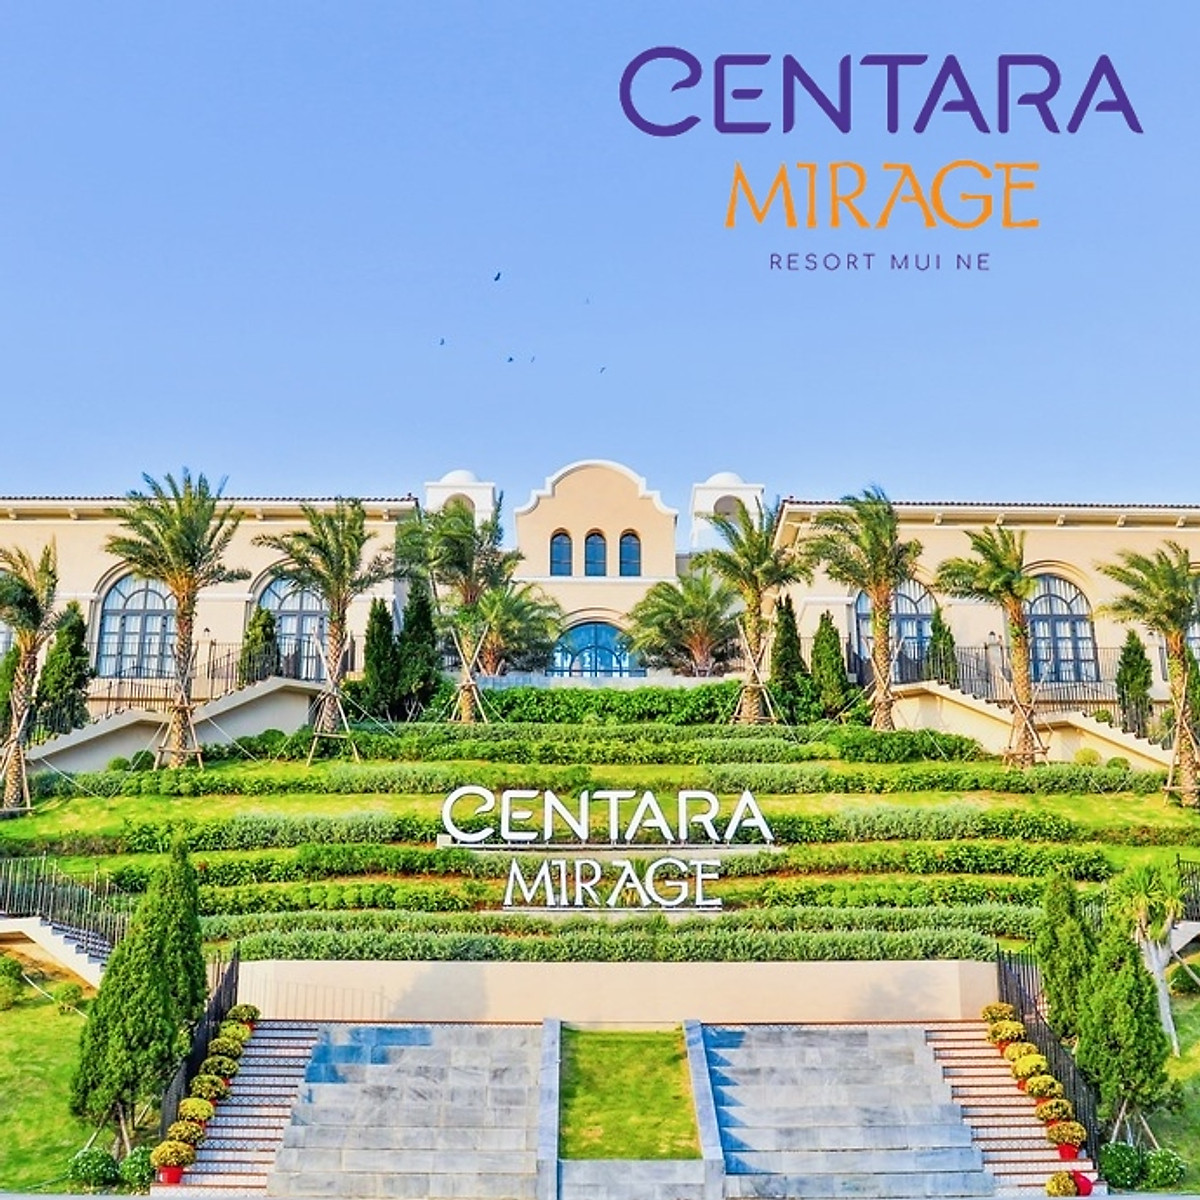 Centara Mirage Resort 5* Mũi Né - Buffet Sáng Free, Hồ Bơi Công Viên Nước Rộng Lớn, Đối Diện Biển Mũi Né, Nhiều Dịch Vụ Hấp Dẫn